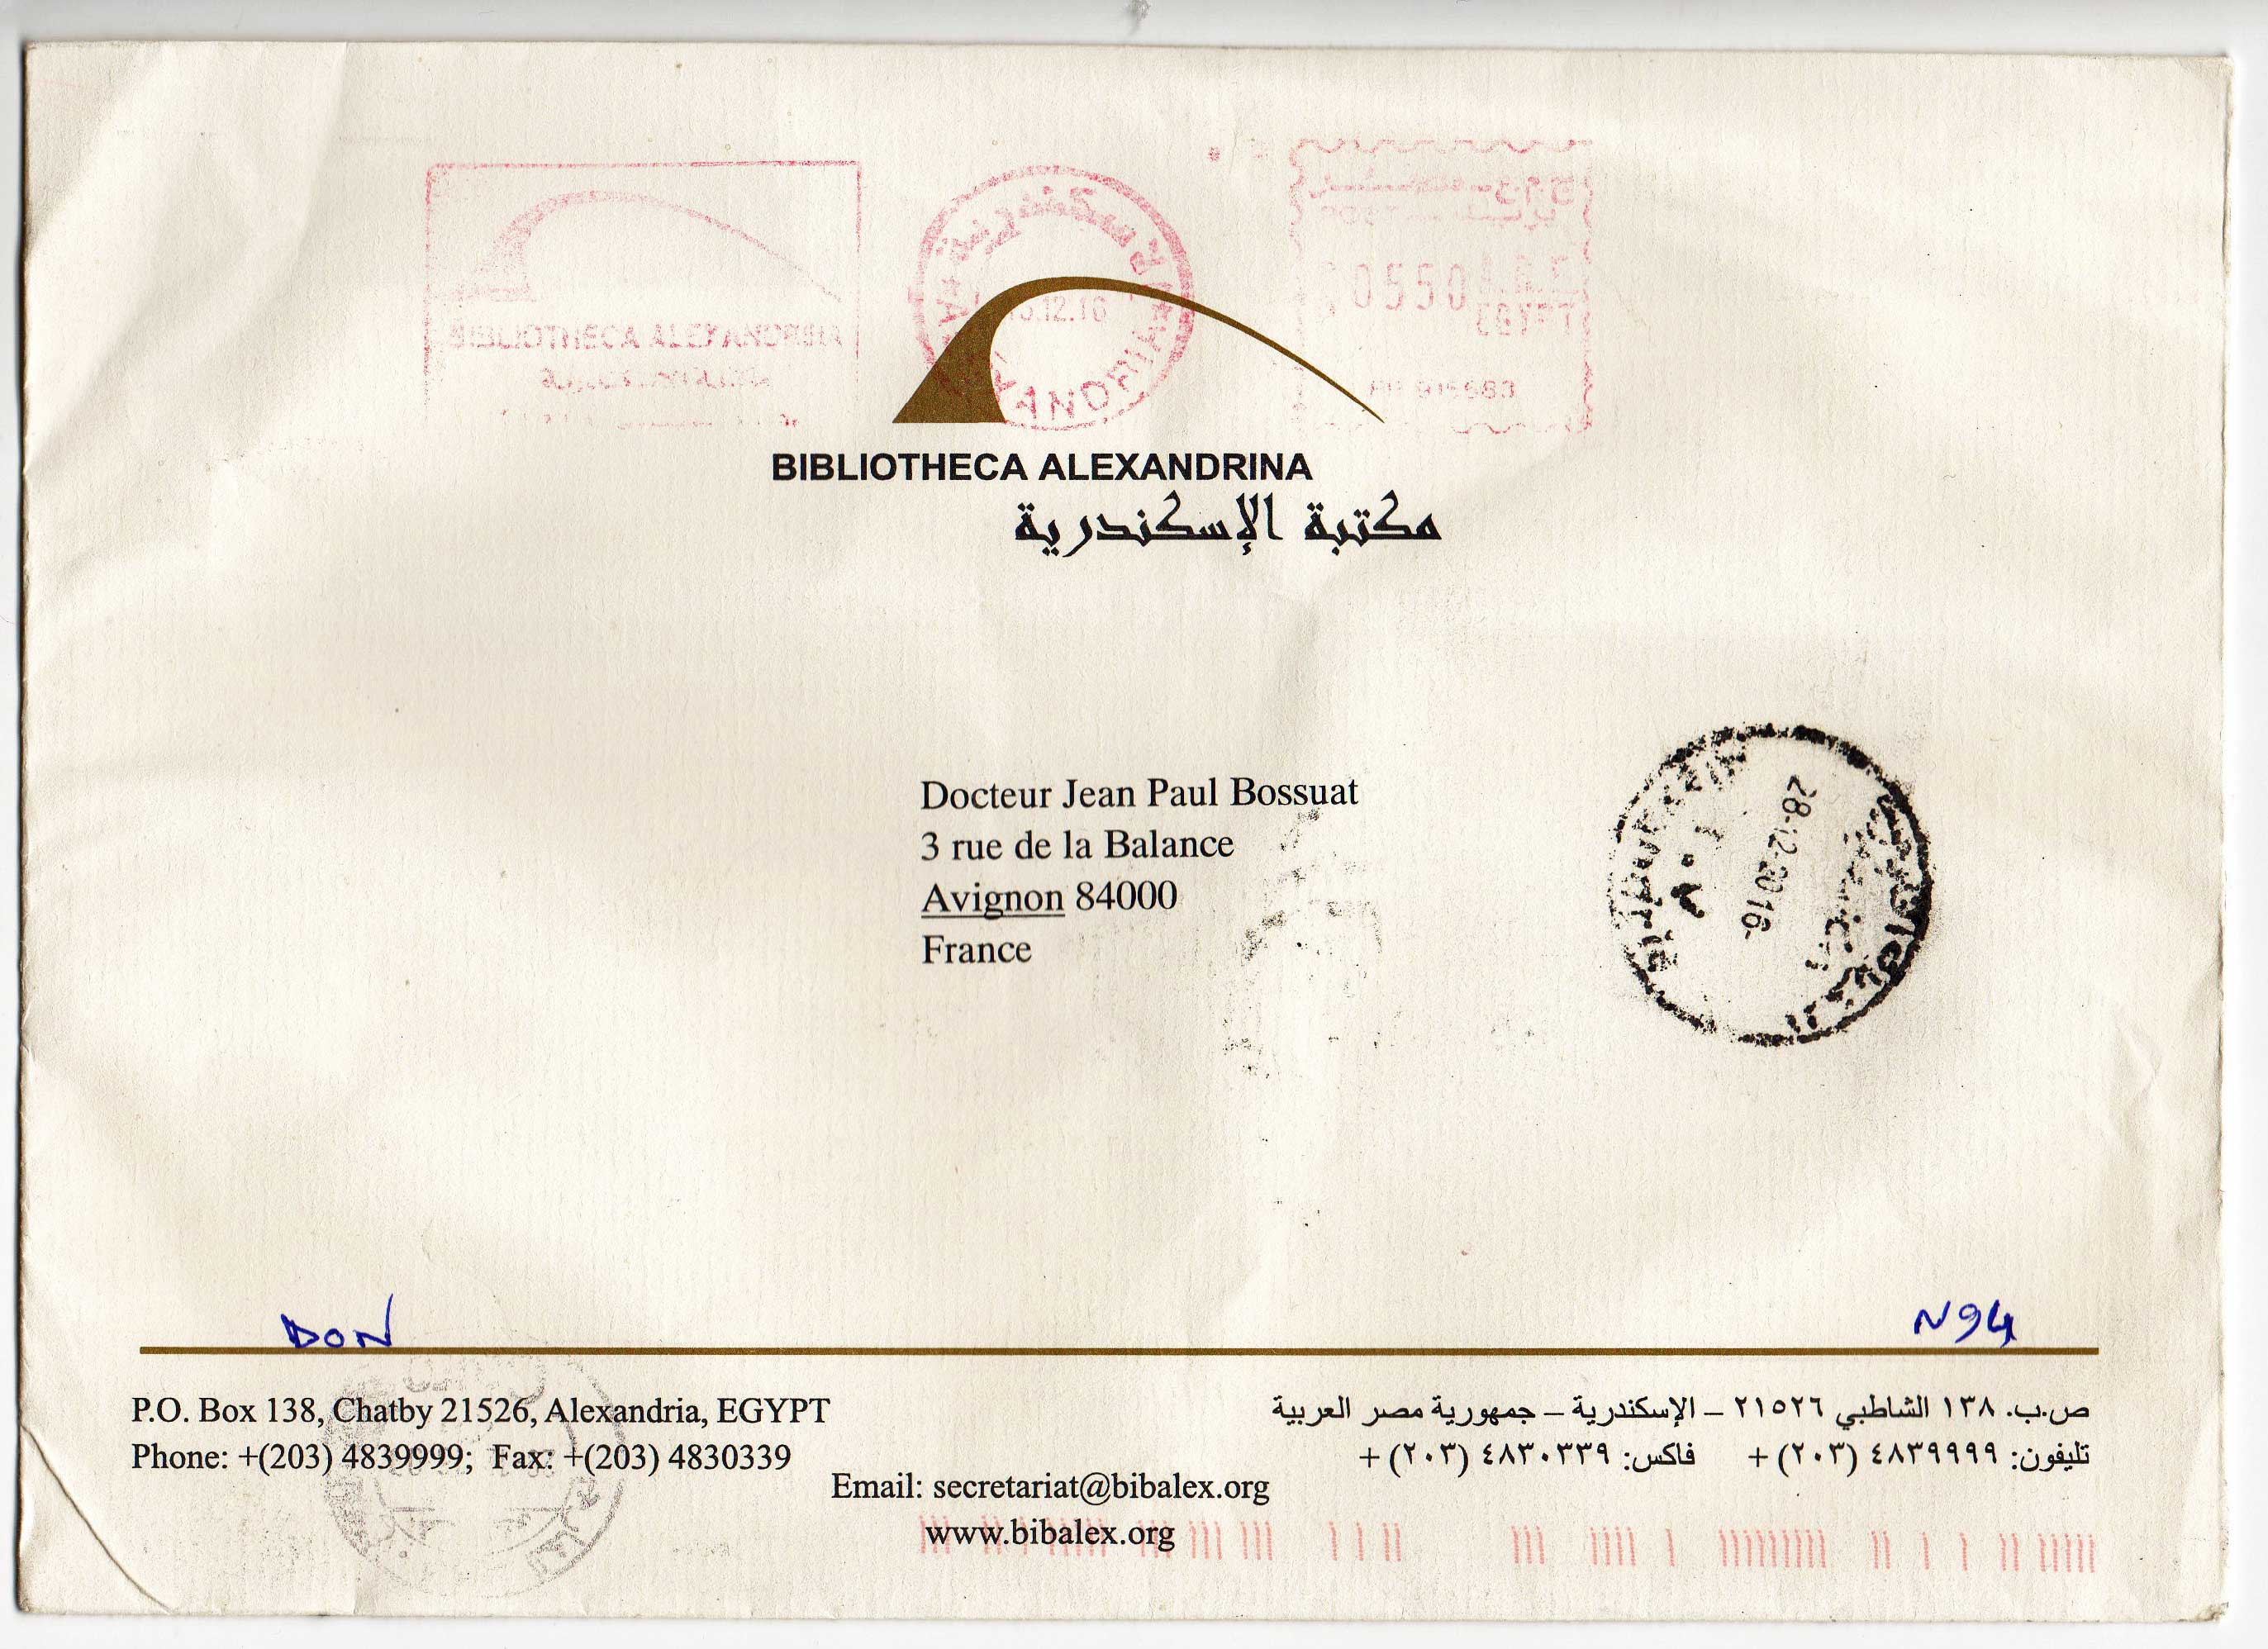 Le courrier de décembre 2016 de la Bibliotheca Alexandrina